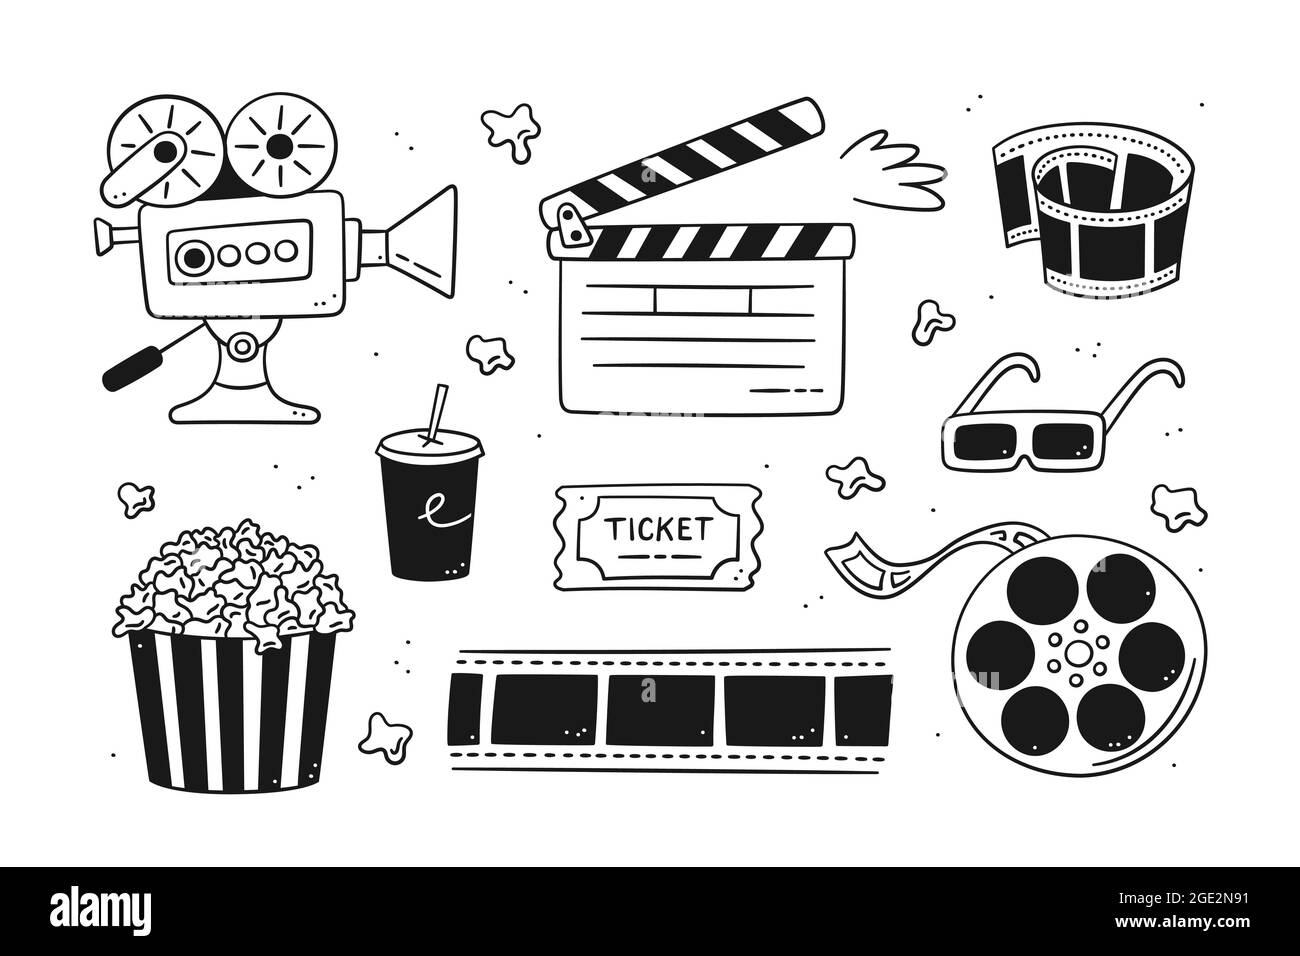 Set cinematografico disegnato a mano con telecamera per film, clapper board, bobina e nastro per cinema, popcorn in scatola a righe, biglietto per film e occhiali 3d. Illustrazione vettoriale Illustrazione Vettoriale